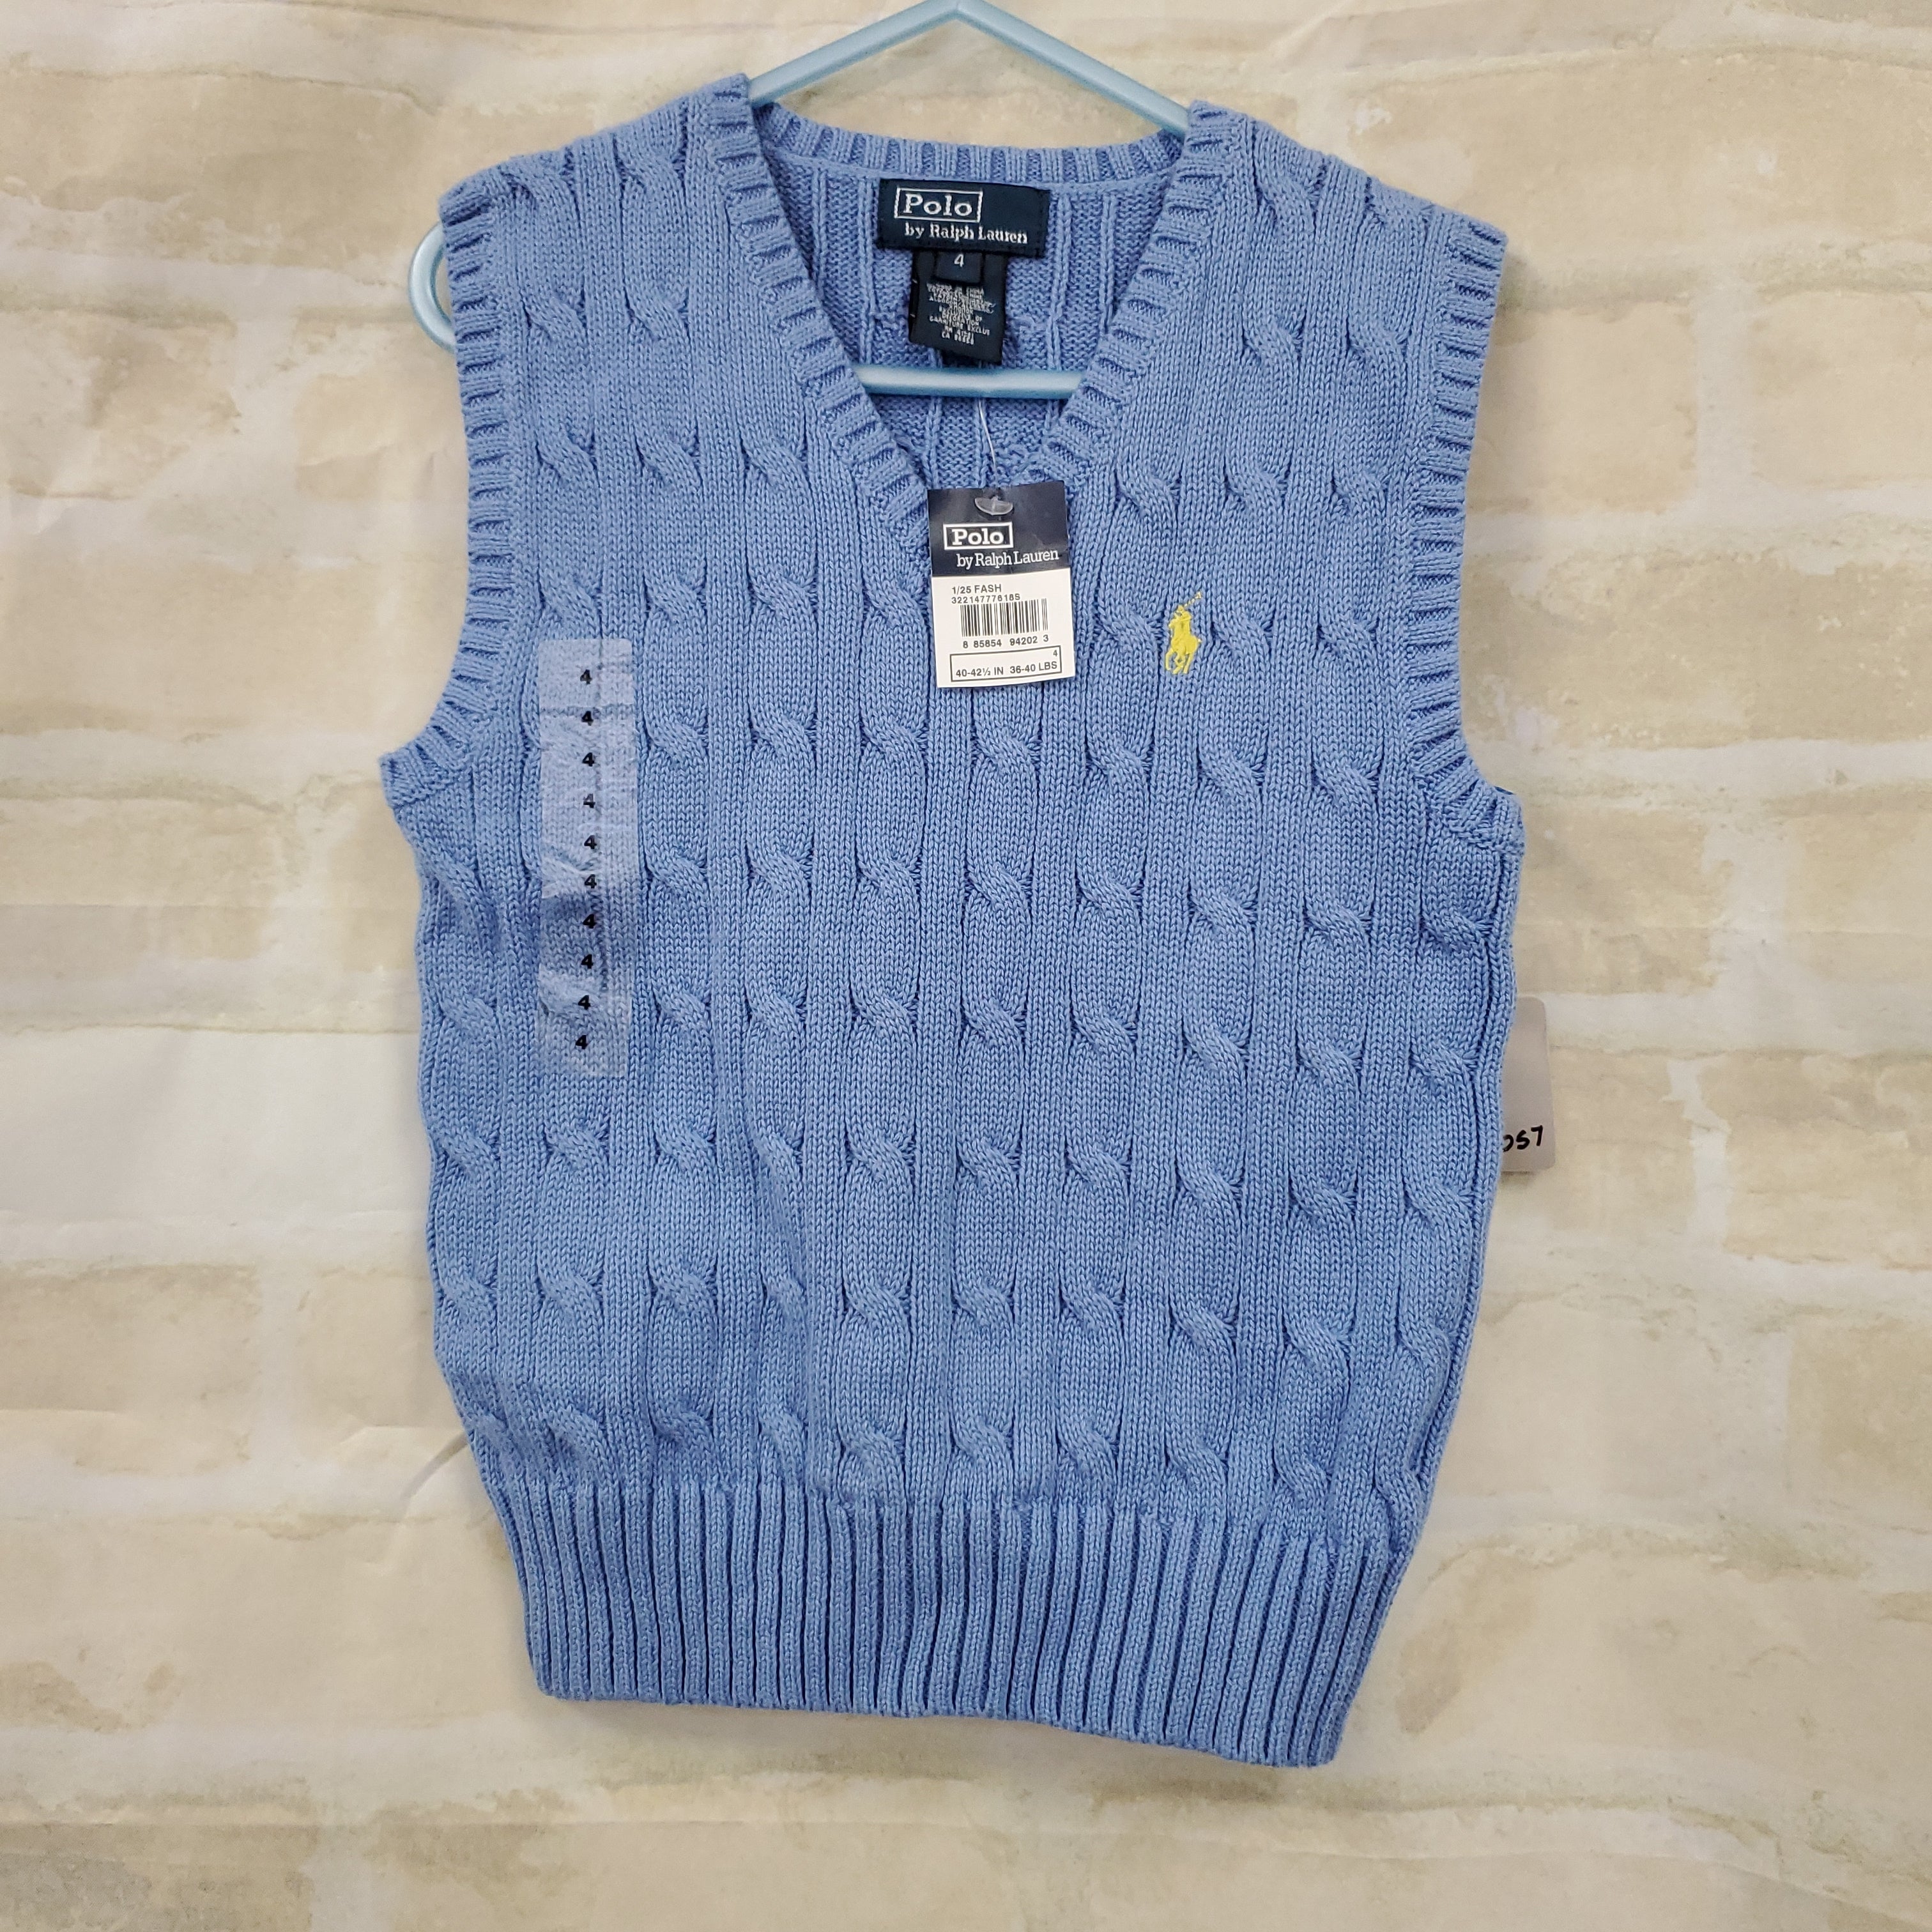 Polo Ralph Lauren boys New blue vest knit 4